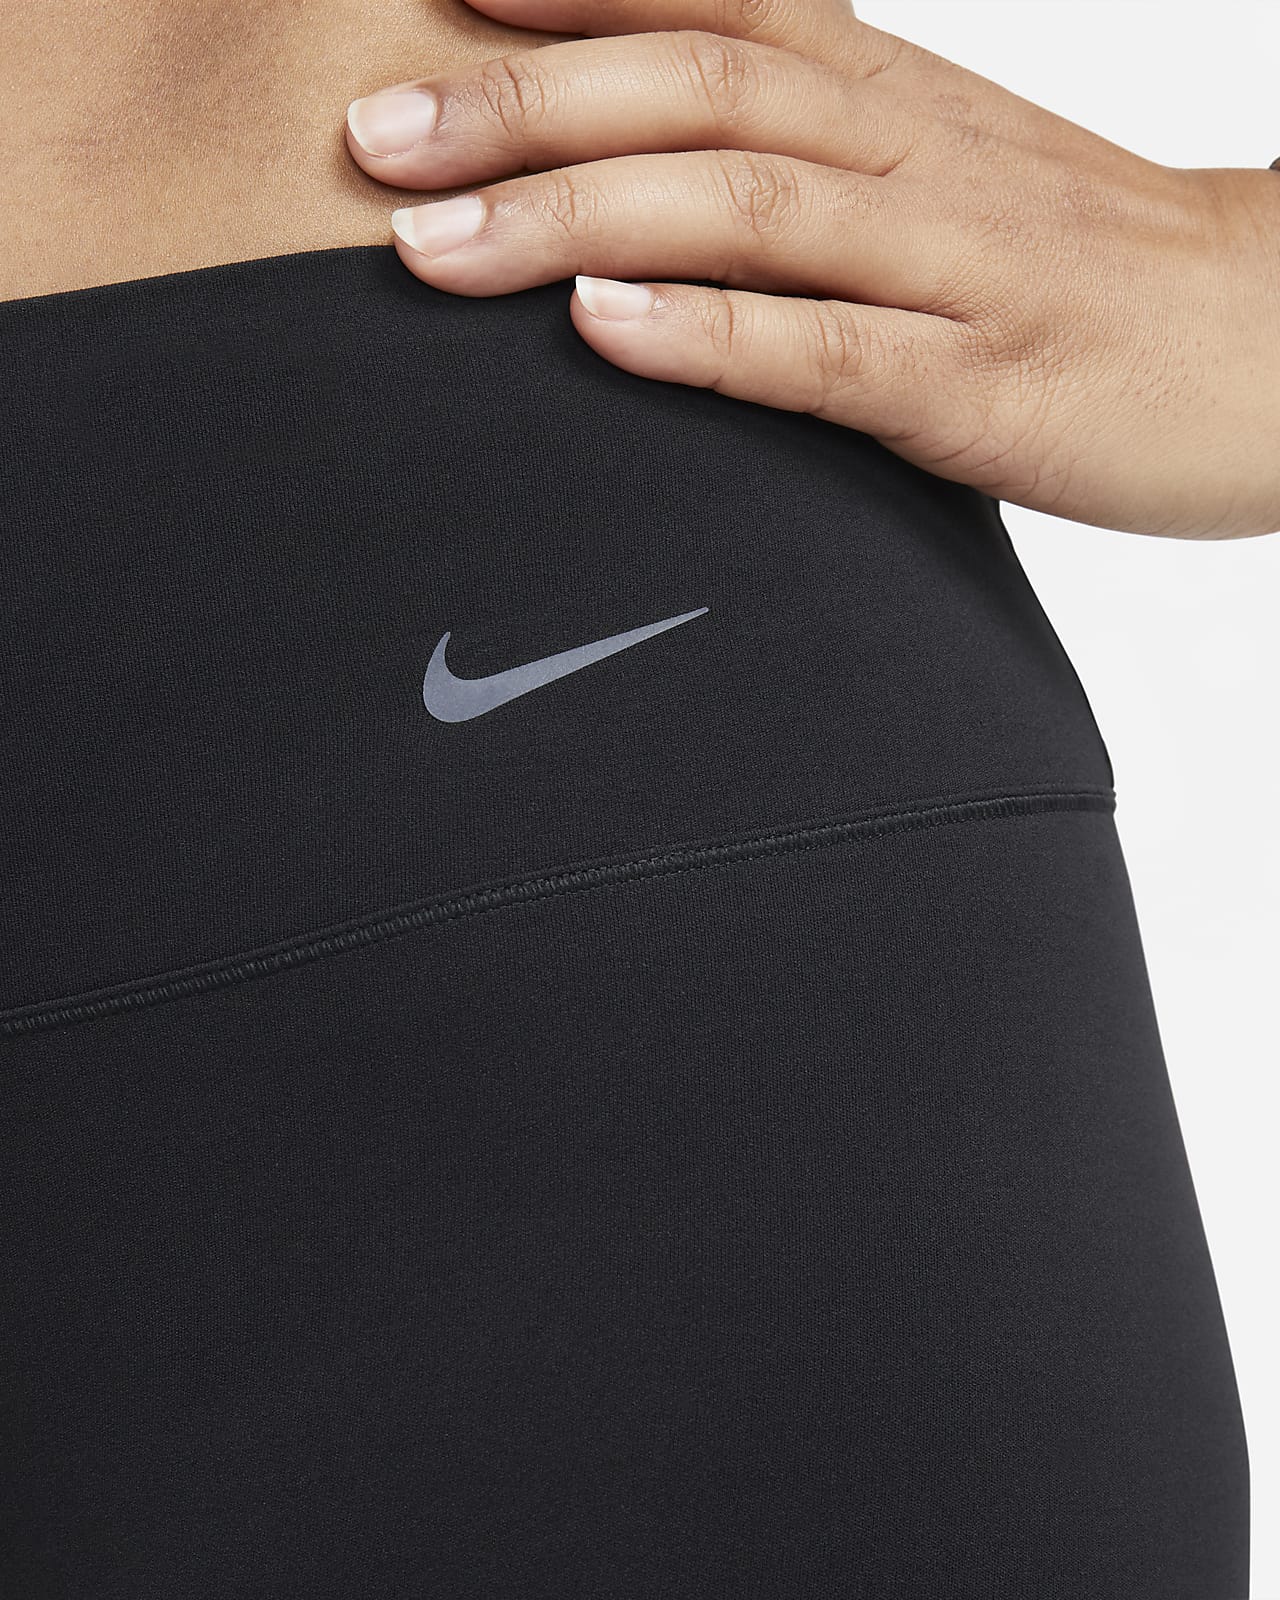 Nike Zenvy Women's Gentle-Support High-Waisted Full-Length Leggings. Nike CH